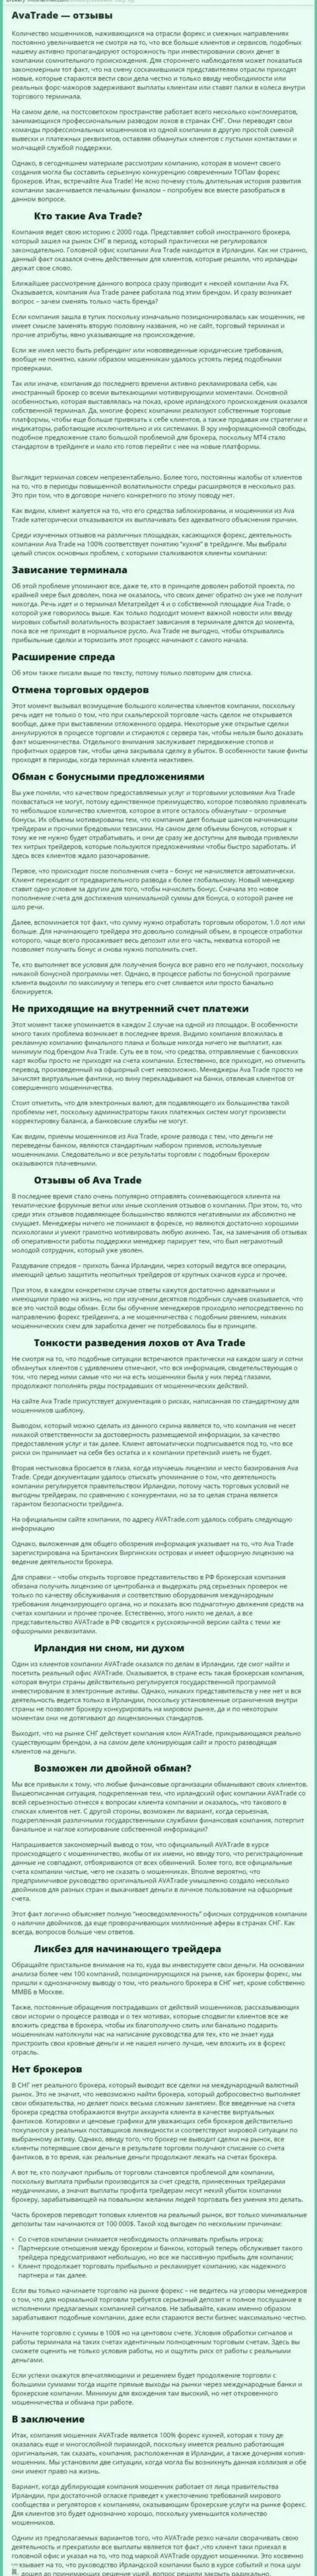 Обзорная публикация со стопудовыми доказательствами противозаконных манипуляций Ava Trade